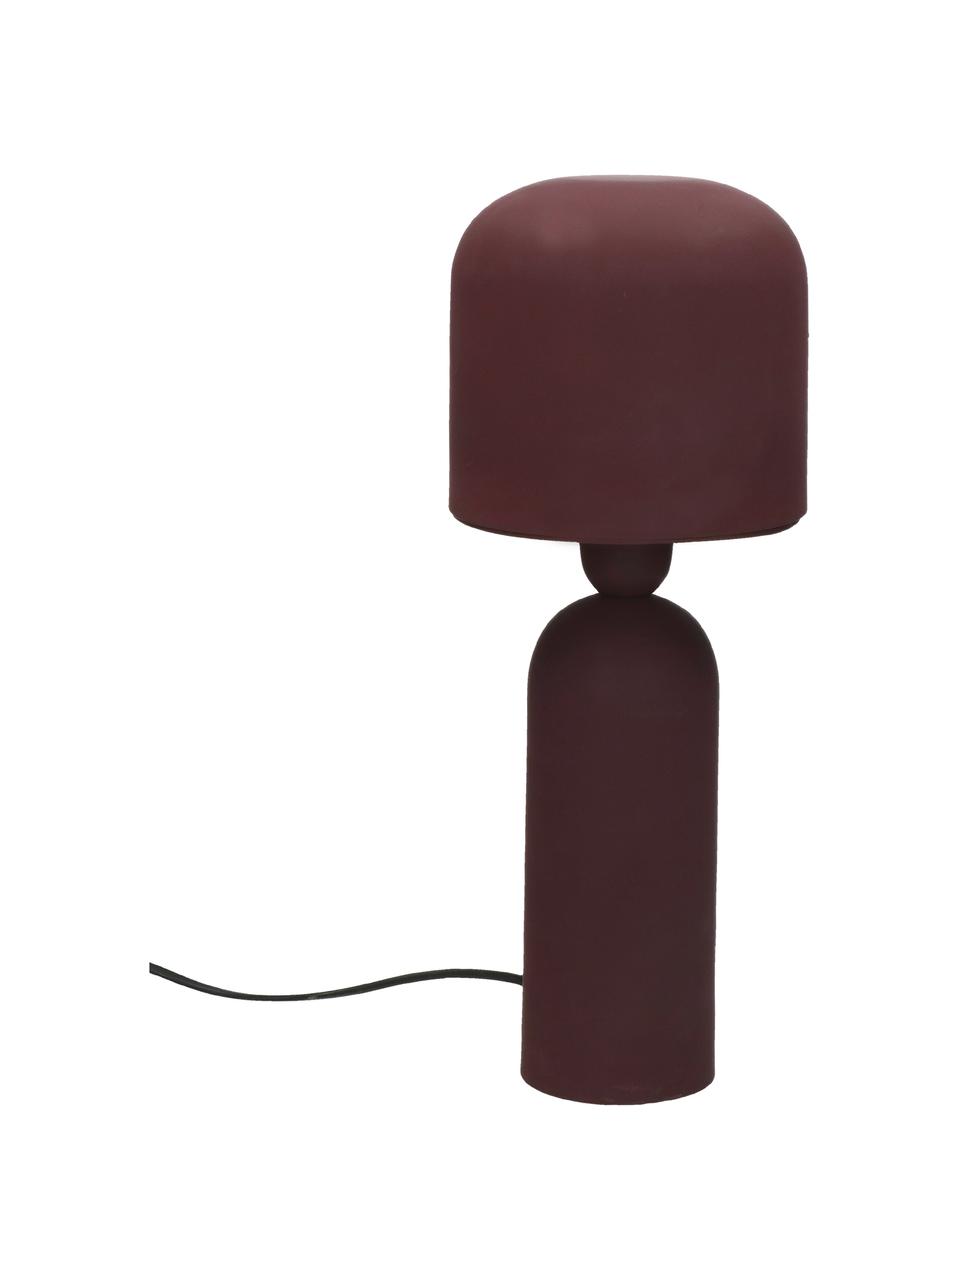 Design tafellamp Bul in wijnrood, Lampenkap: gecoat metaal, Lampvoet: gecoat metaal, Voor- en achterzijde: wijnrood, Ø 15 x H 35 cm